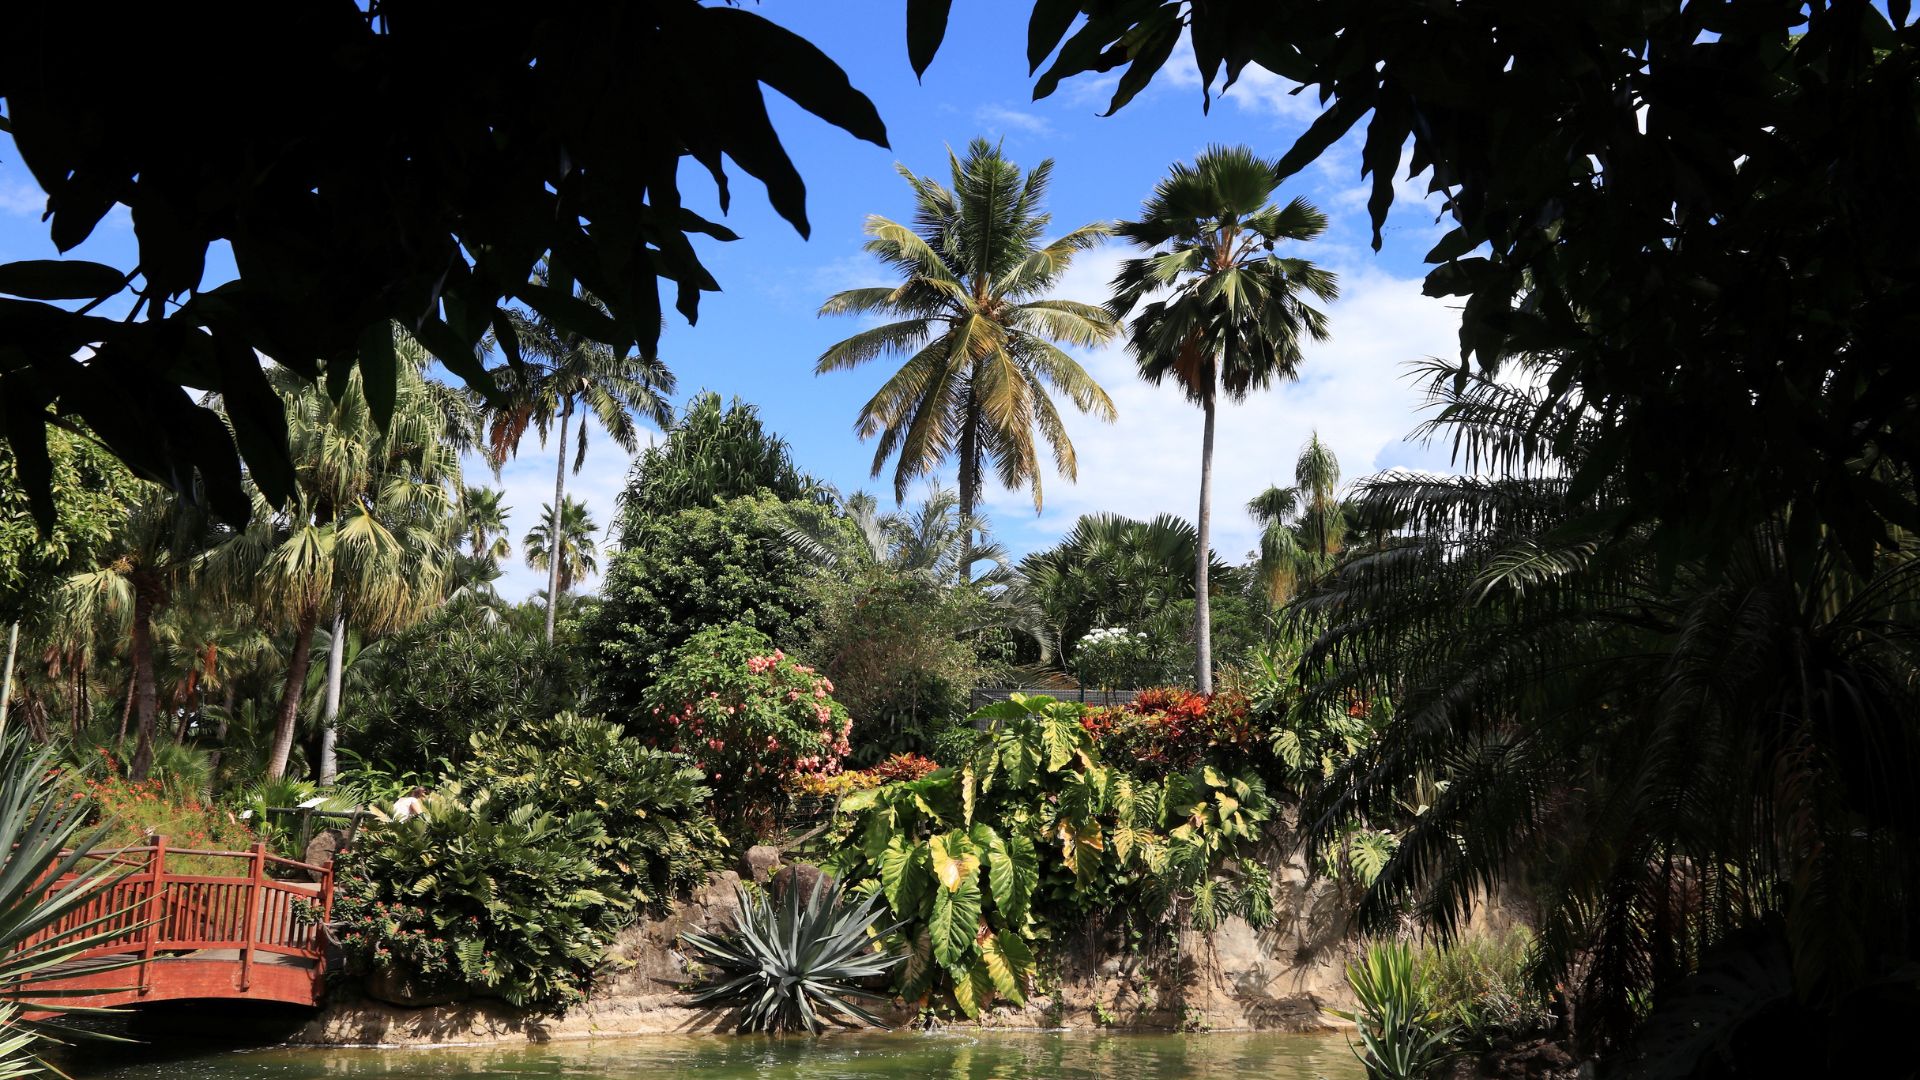 Vacances en Guadeloupe-Jardin botanique de Deshaies